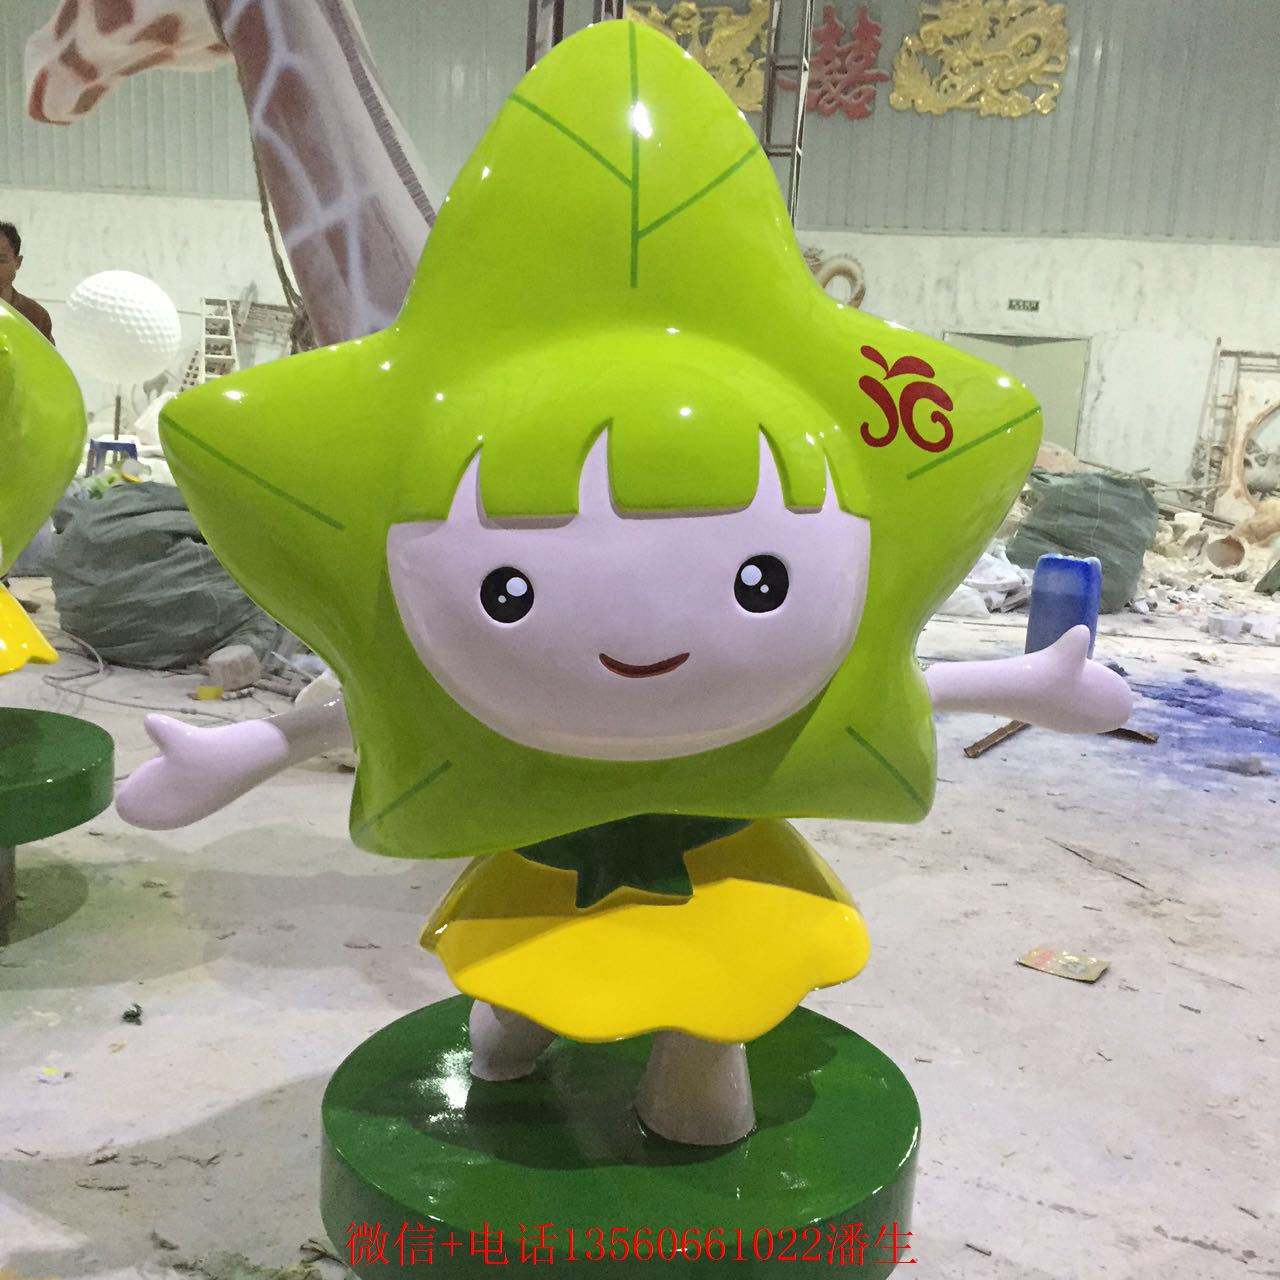 供应深圳市卡通雕塑卡通小女孩雕塑厂家，深圳市卡通雕塑卡通小女孩雕塑生产厂家，欢迎来电咨询与订购。图片